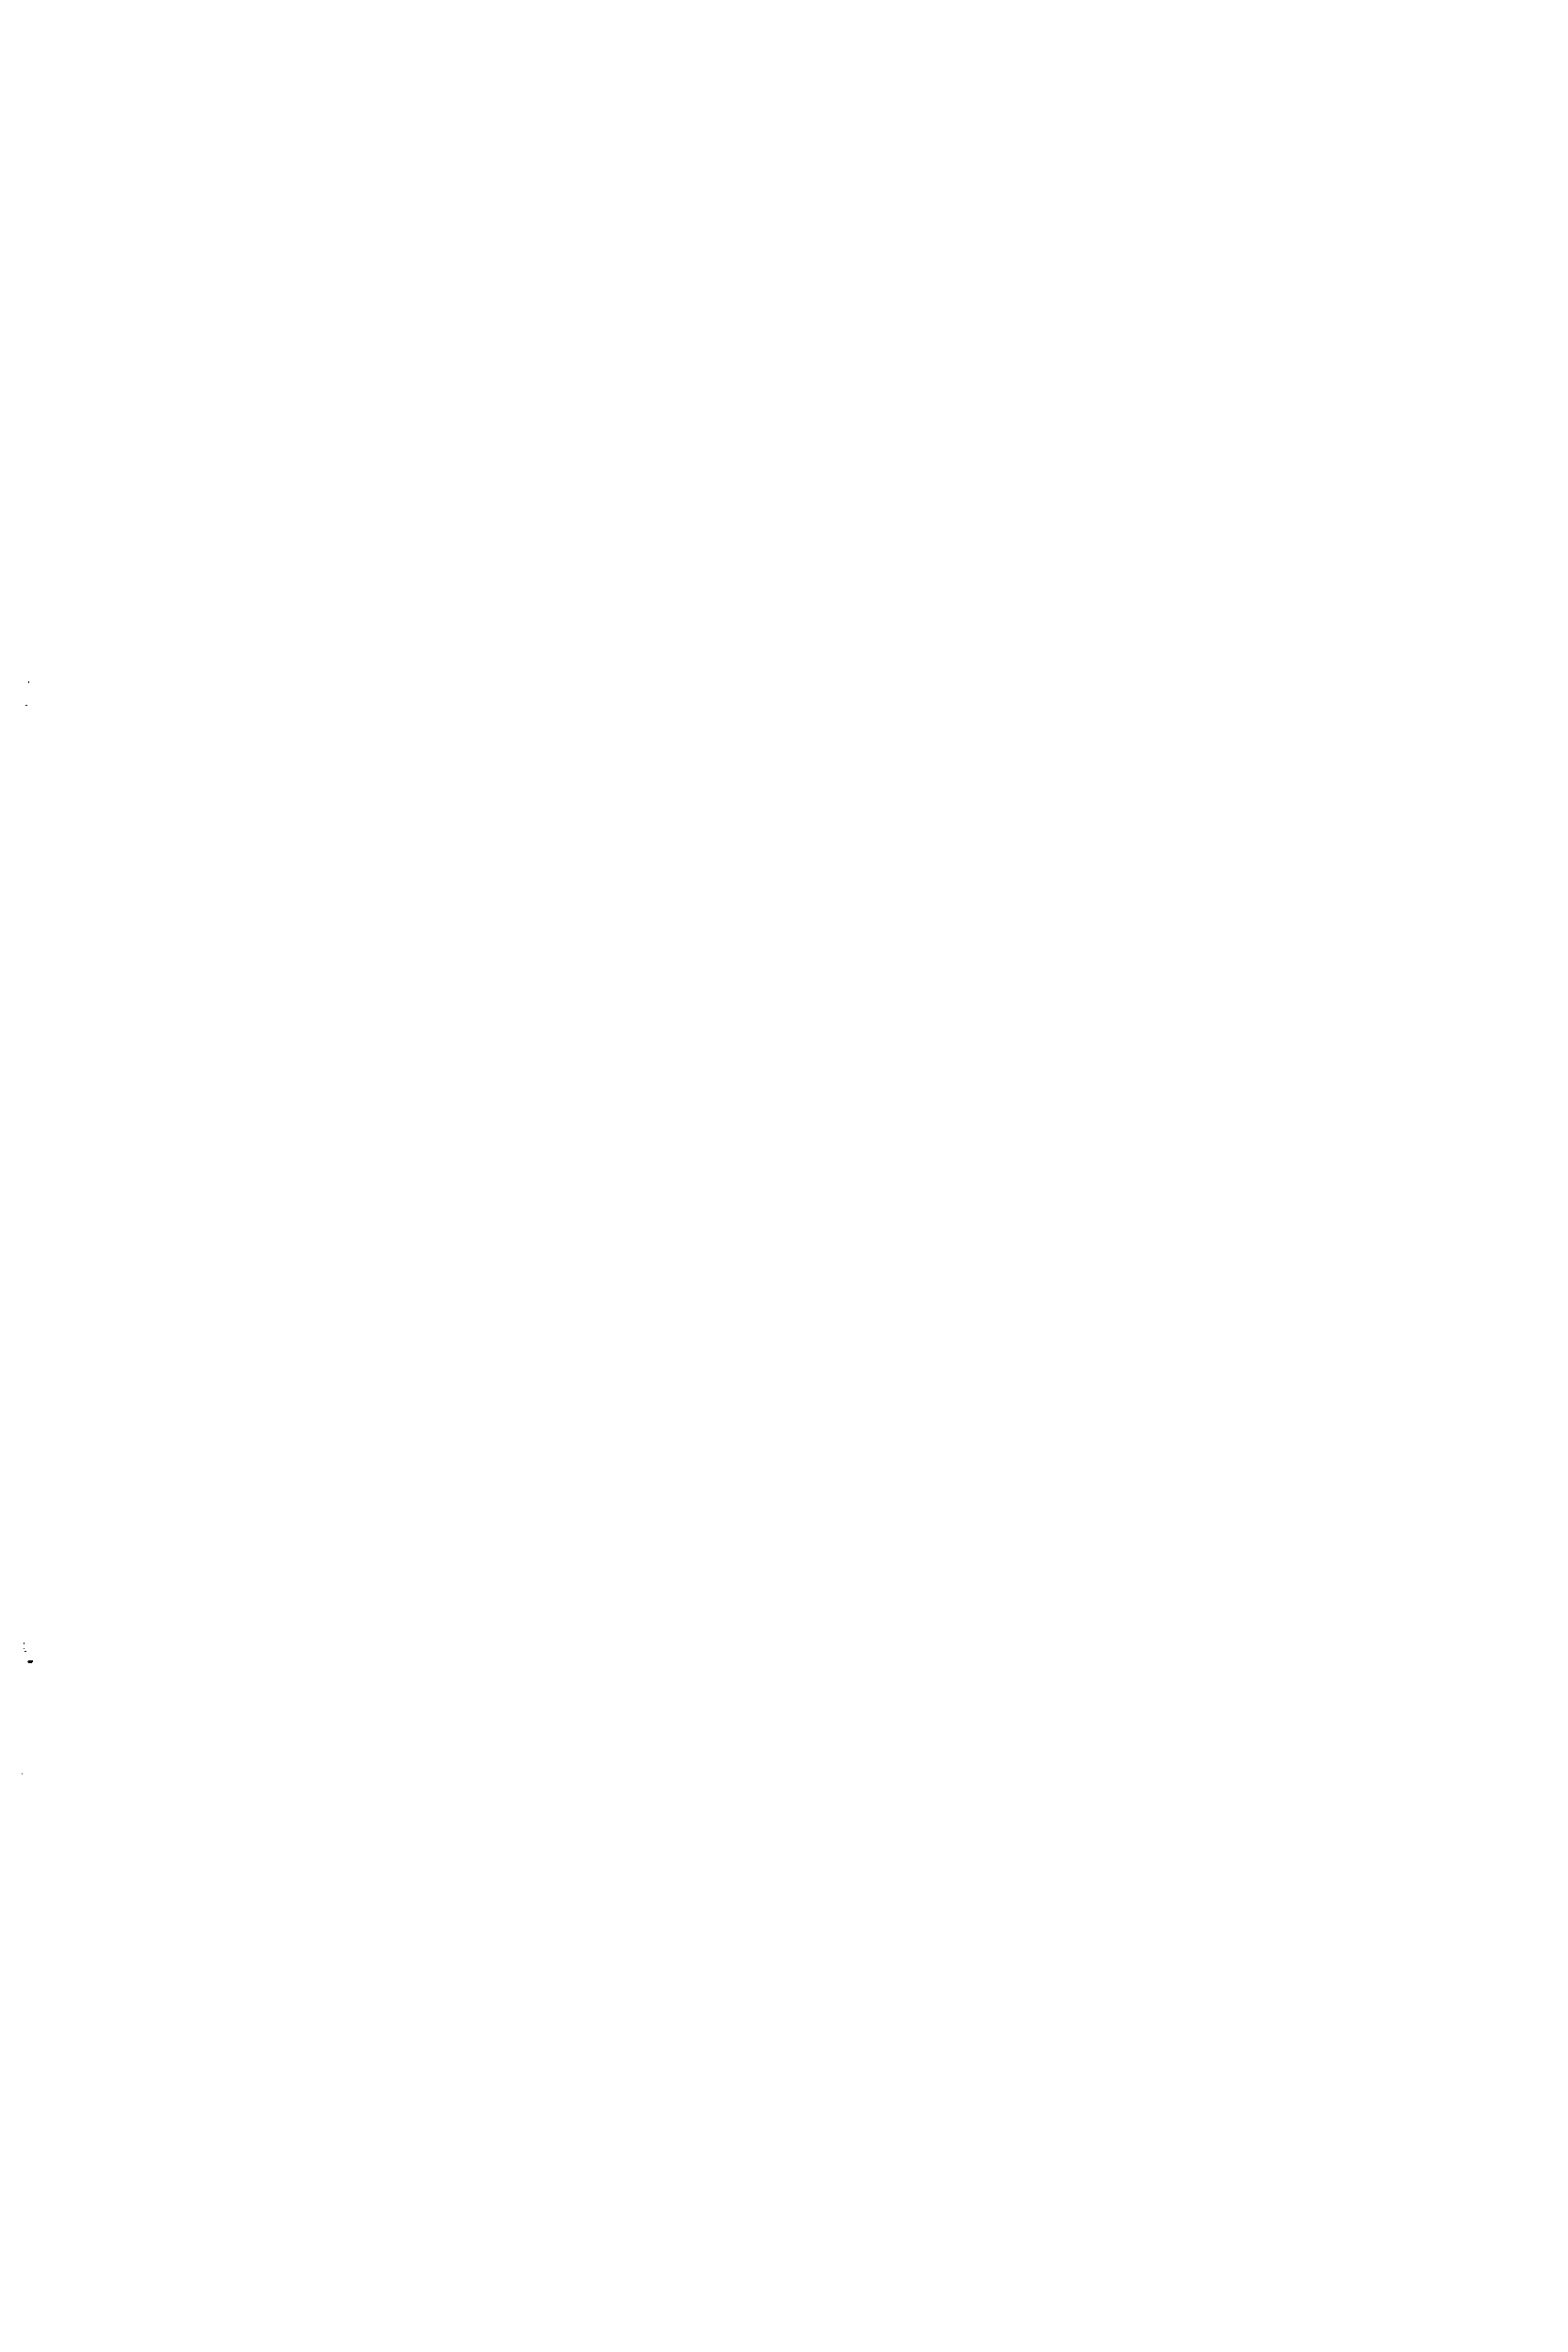 Рис. 21. Схема возникновения коррозии арматуры железобетонной трубы под действием блуждающего тока
